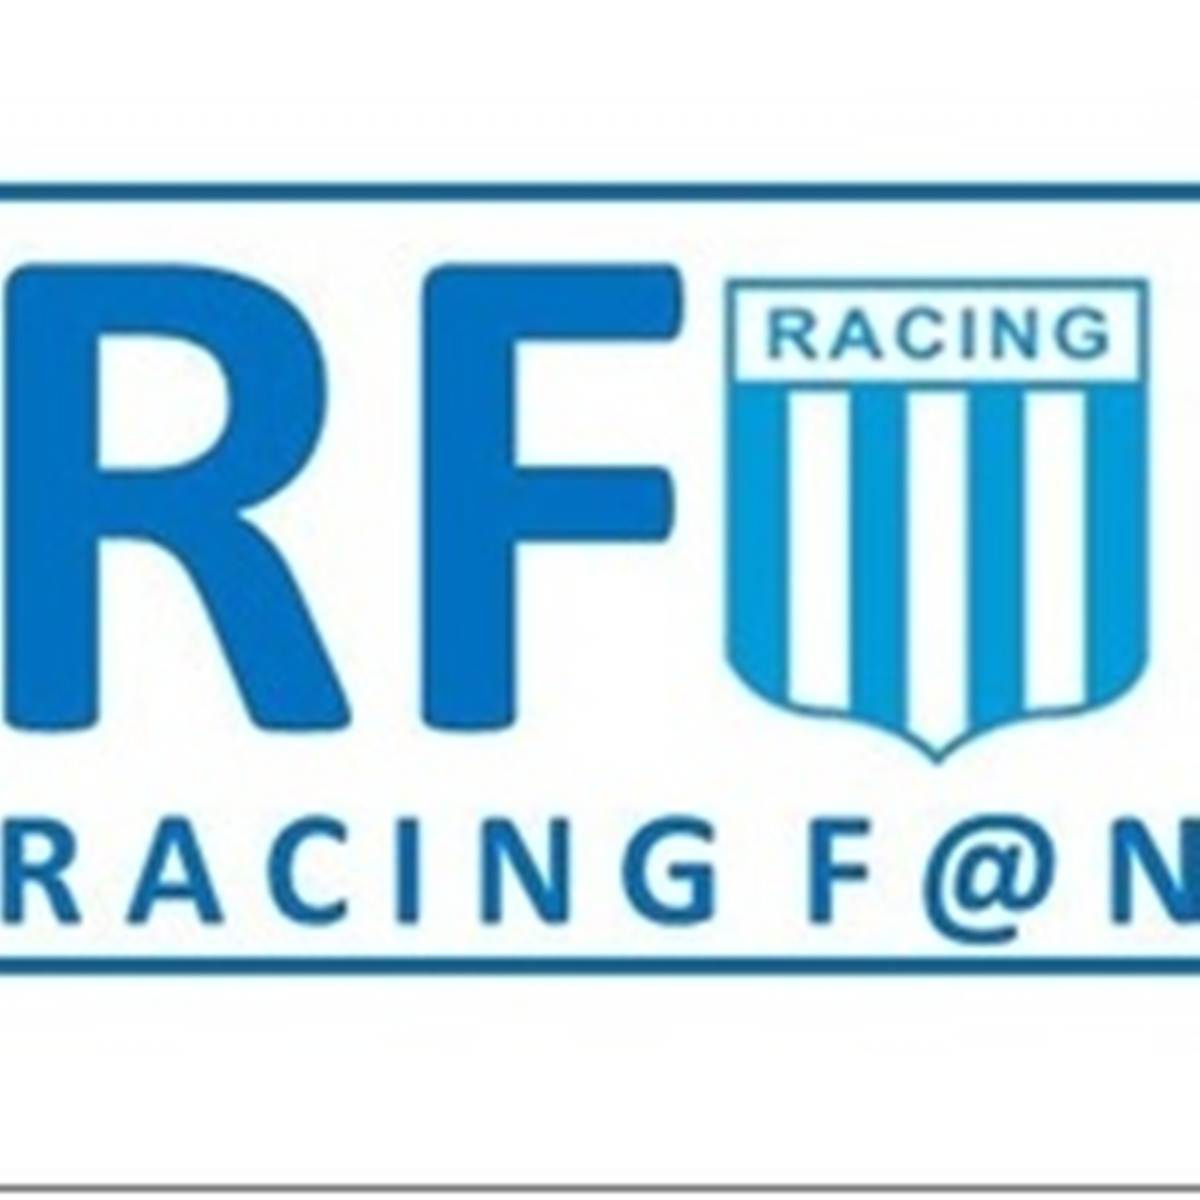 #Podcast Racing Fan 11.08: El ídolo Rubén Paz @rpazmar10 y Sol Domínguez, referente @RacingFutsalFem